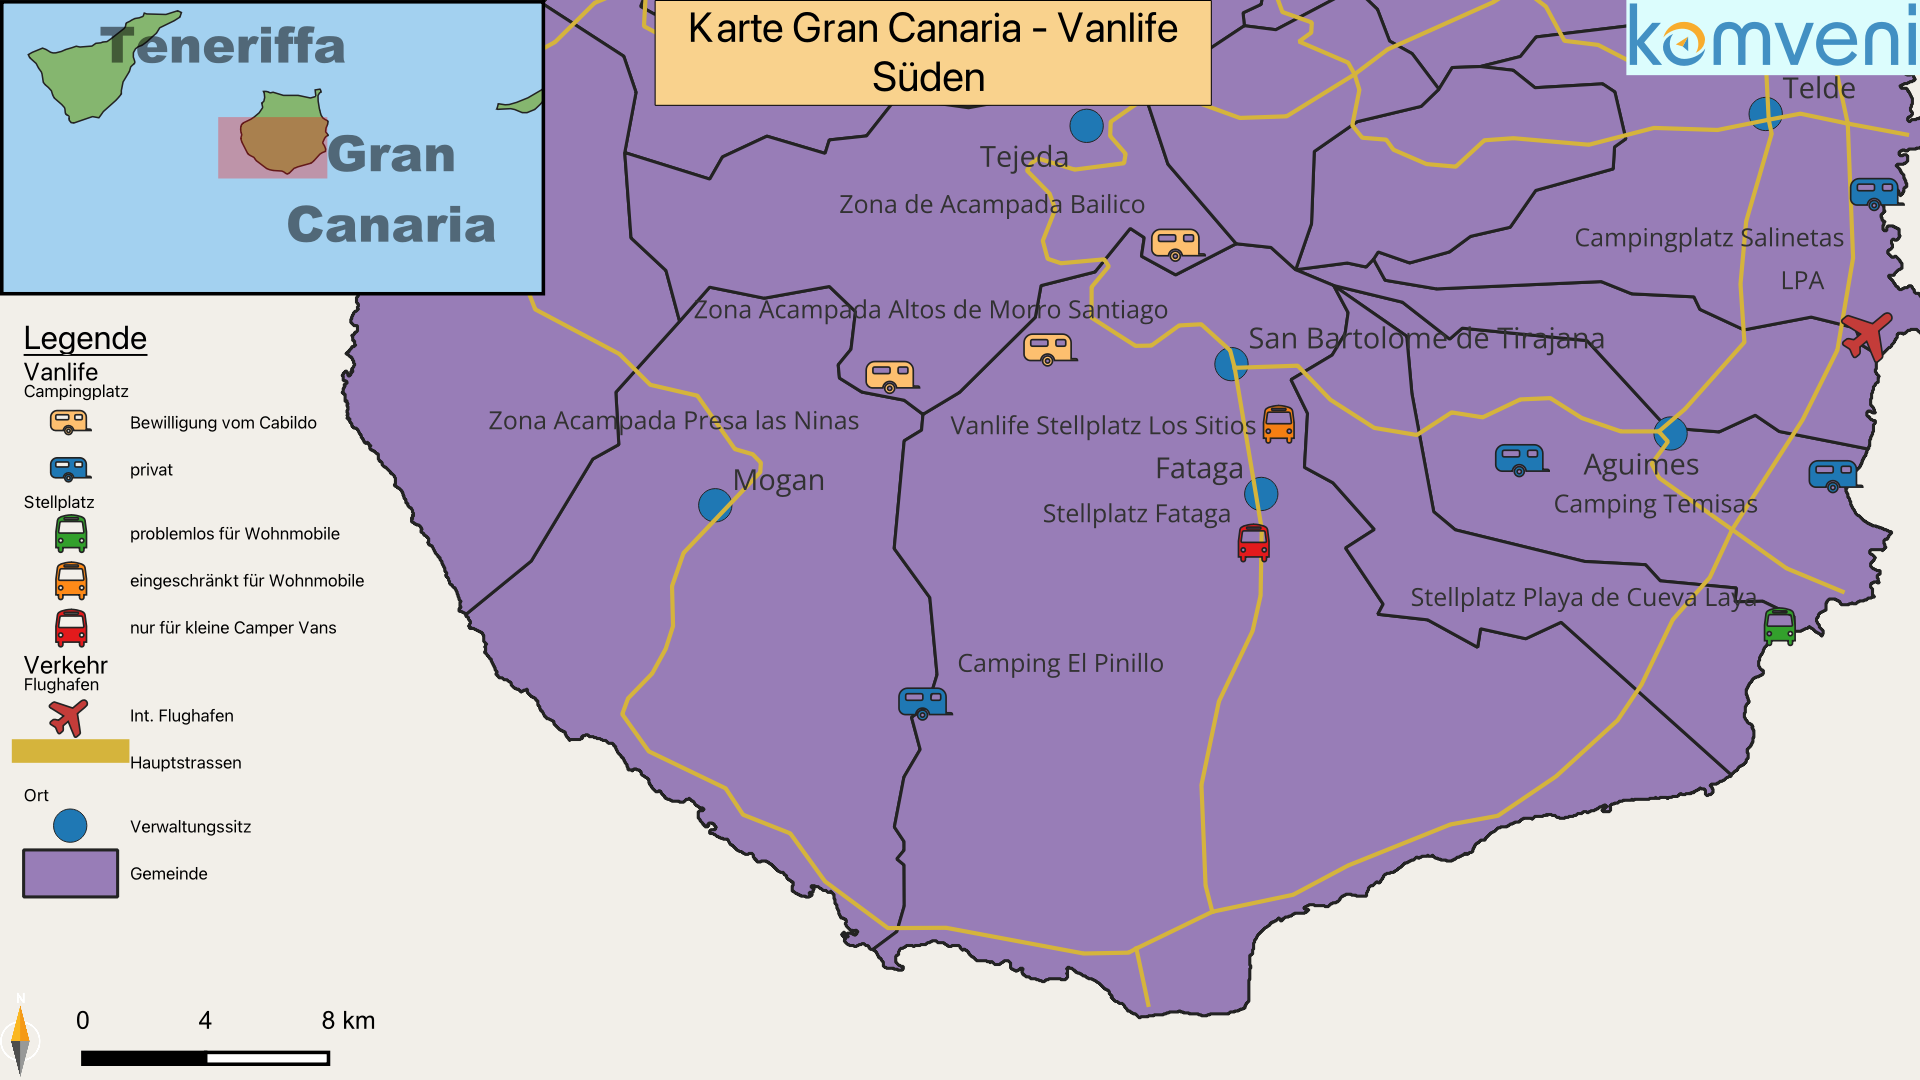 Karte Gran Canaria Vanlife Süden